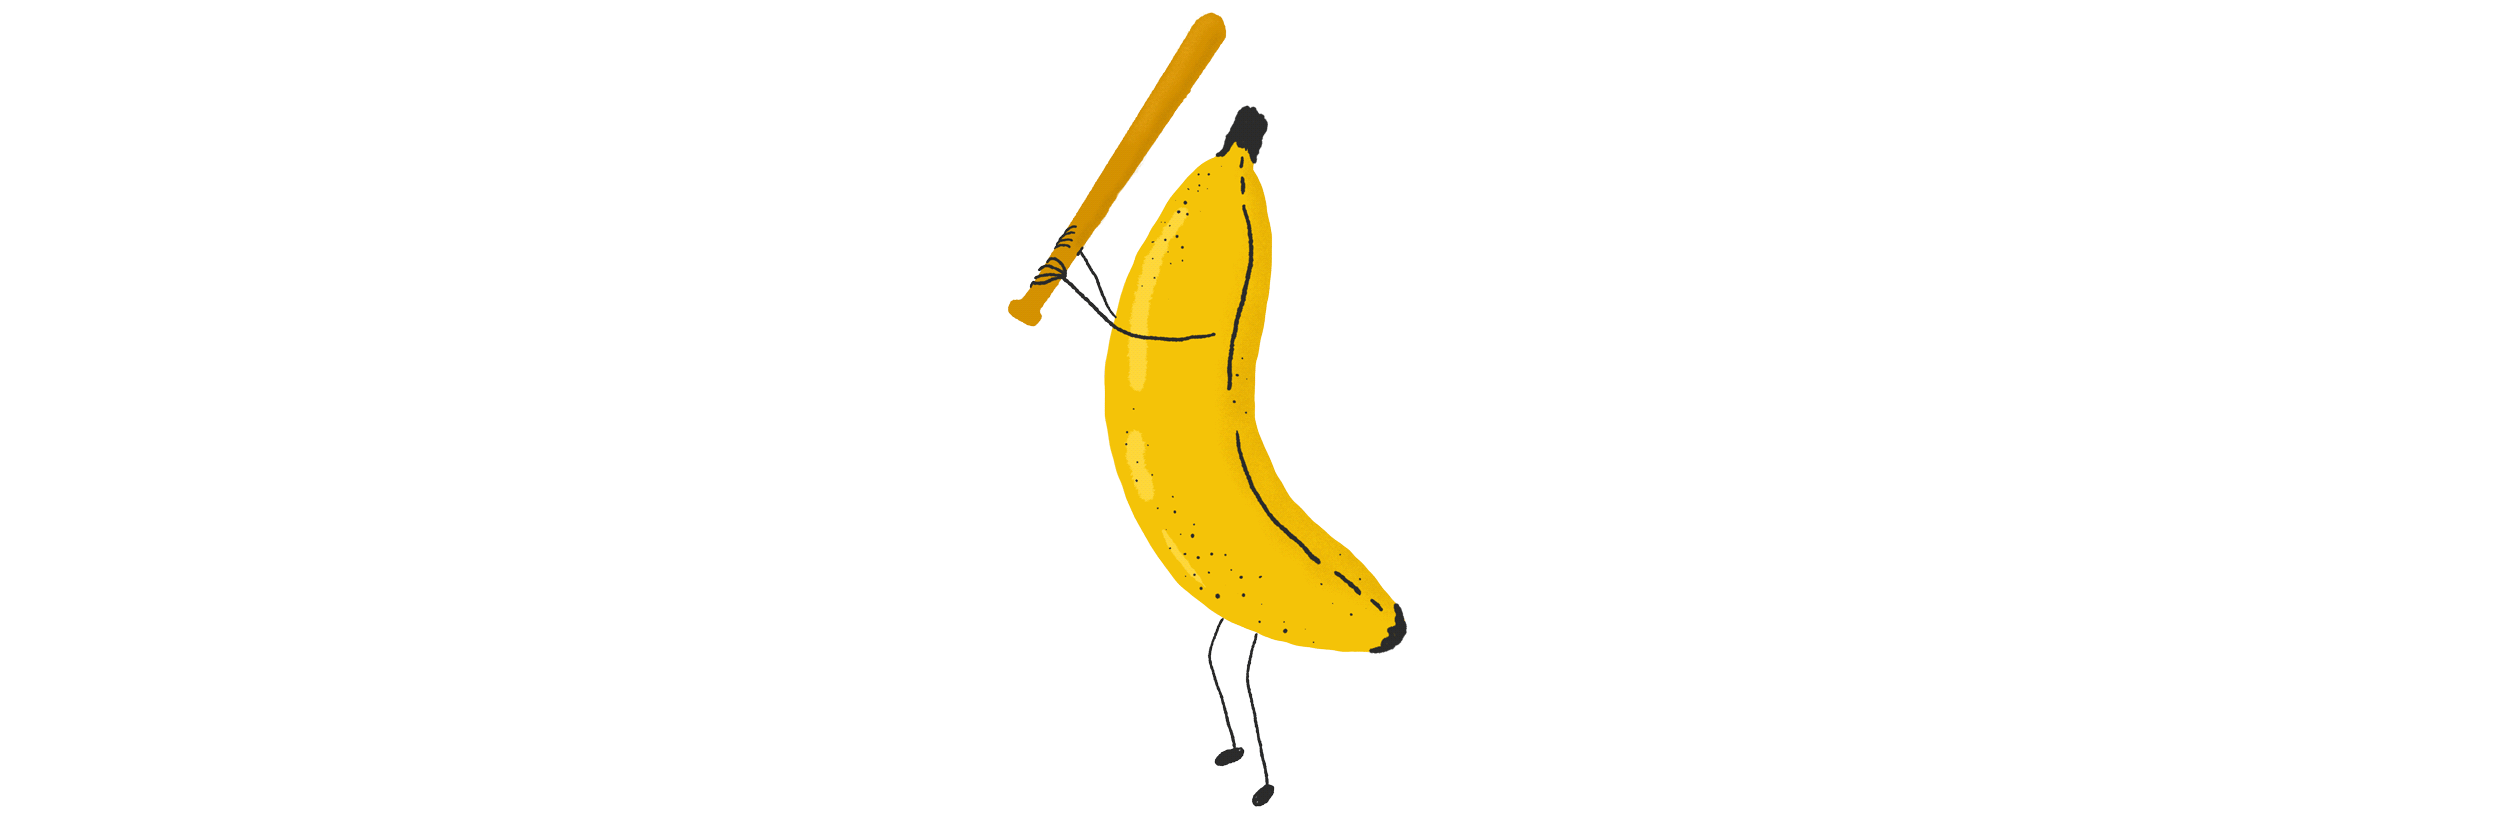 Savannah Bananas - Los Angeles Times